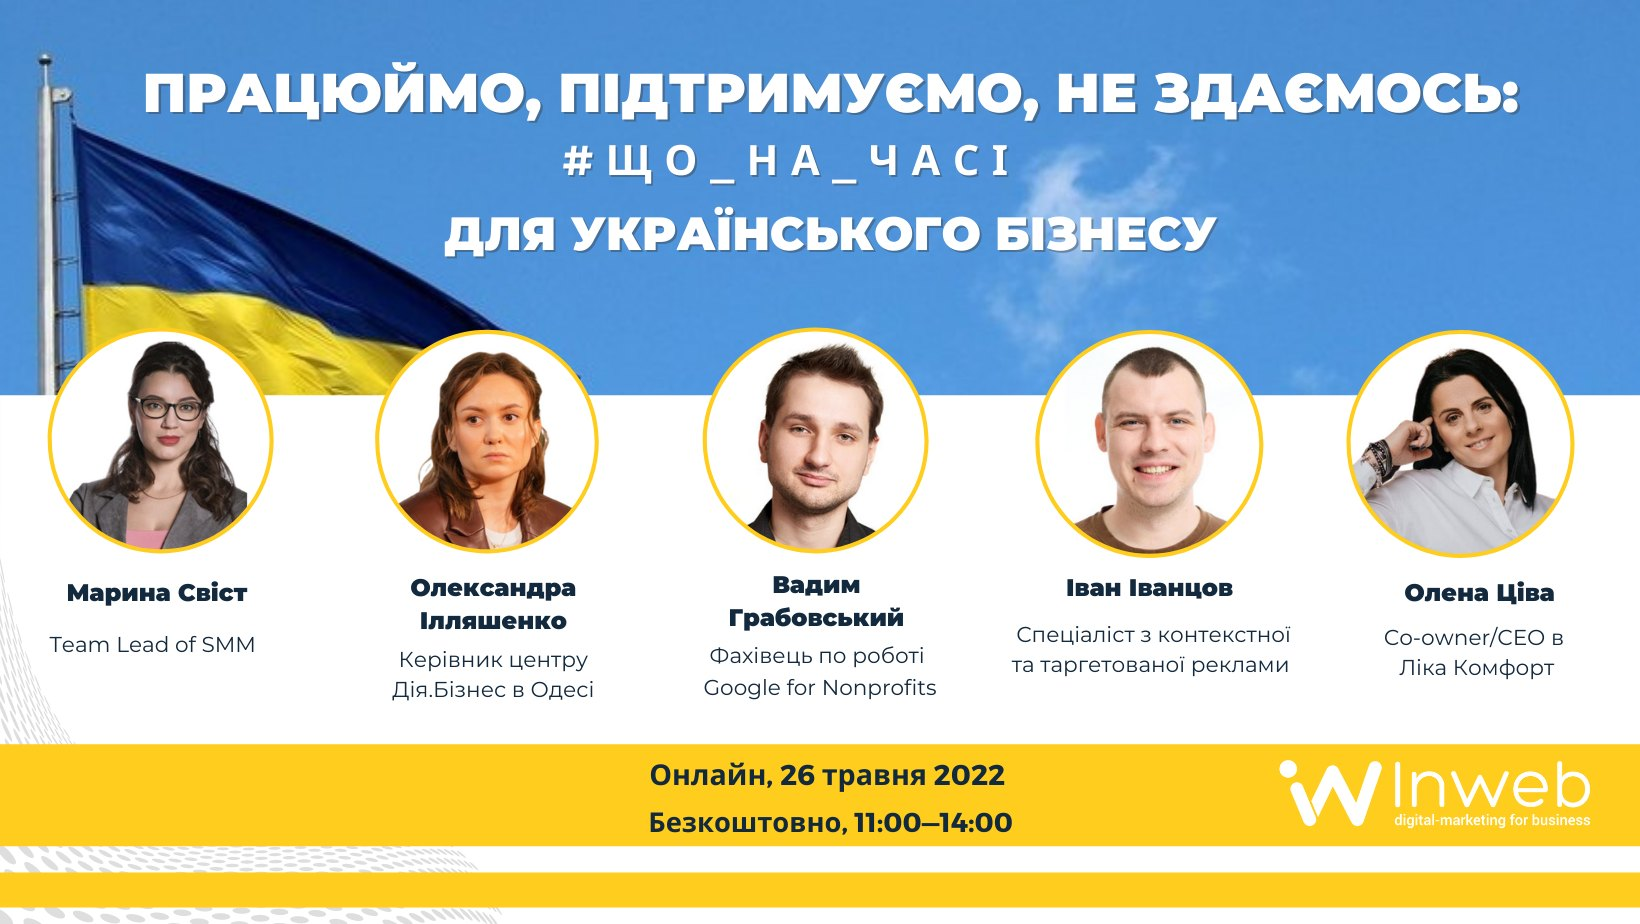 Що на часі для українського бізнесу?